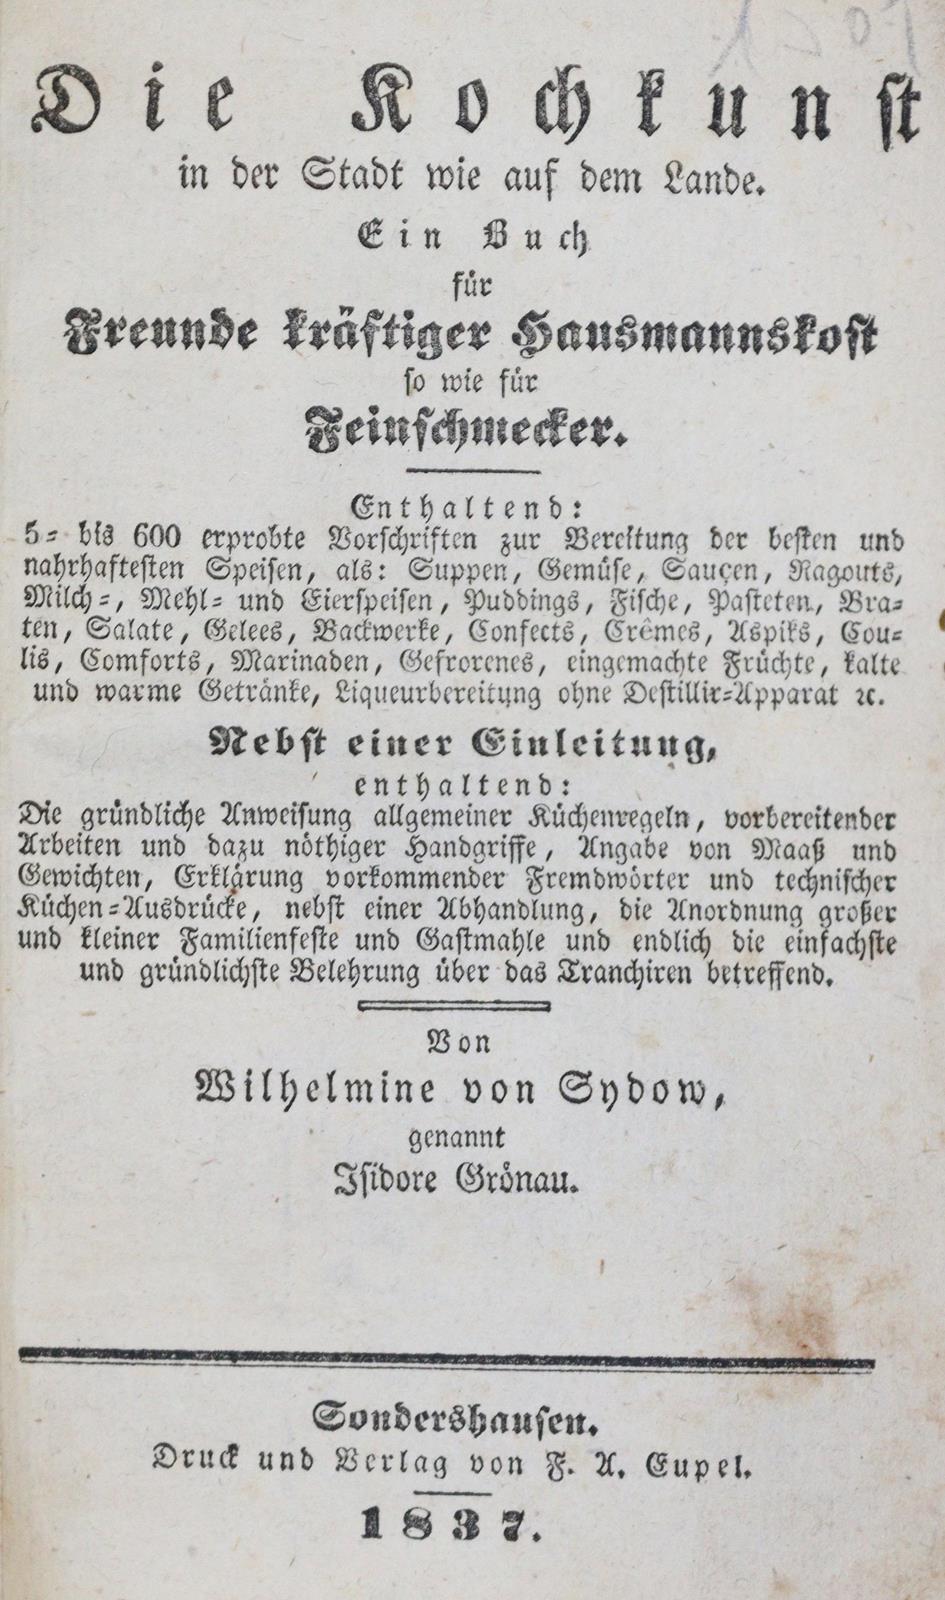 Sydow,W.v. (gen. Isidore Grönau). | Bild Nr.1